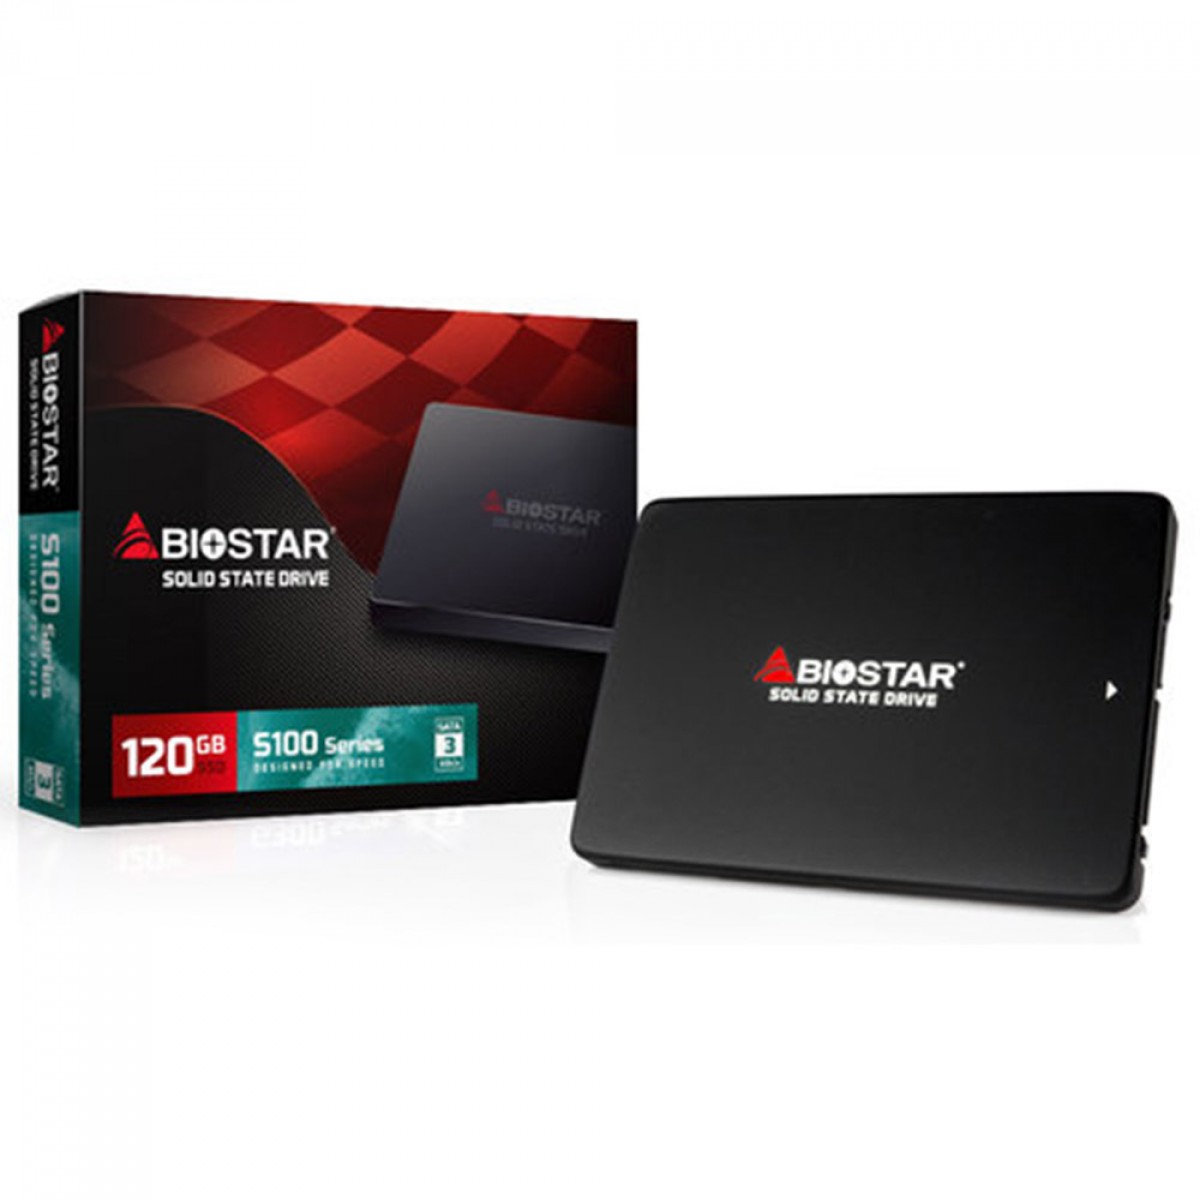 SSD Biostar S100, 120GB, Sata III, Leitura 530MB/s e Gravação 380MB/s, SM120S2E31-PS1RG-BS2